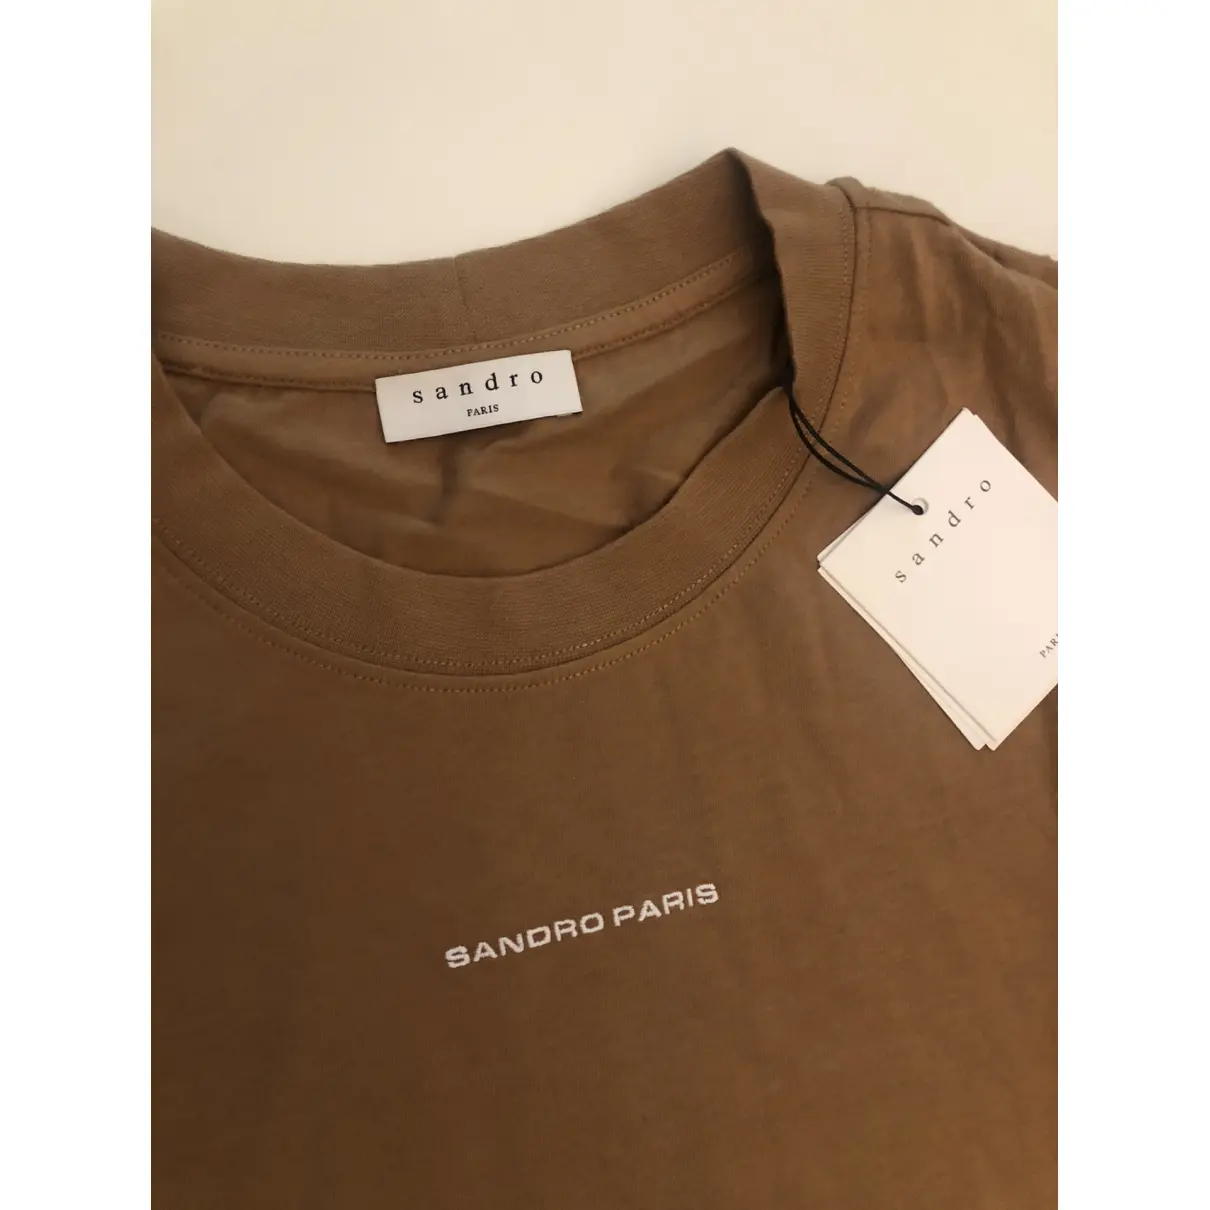 Buy Sandro T-shirt online